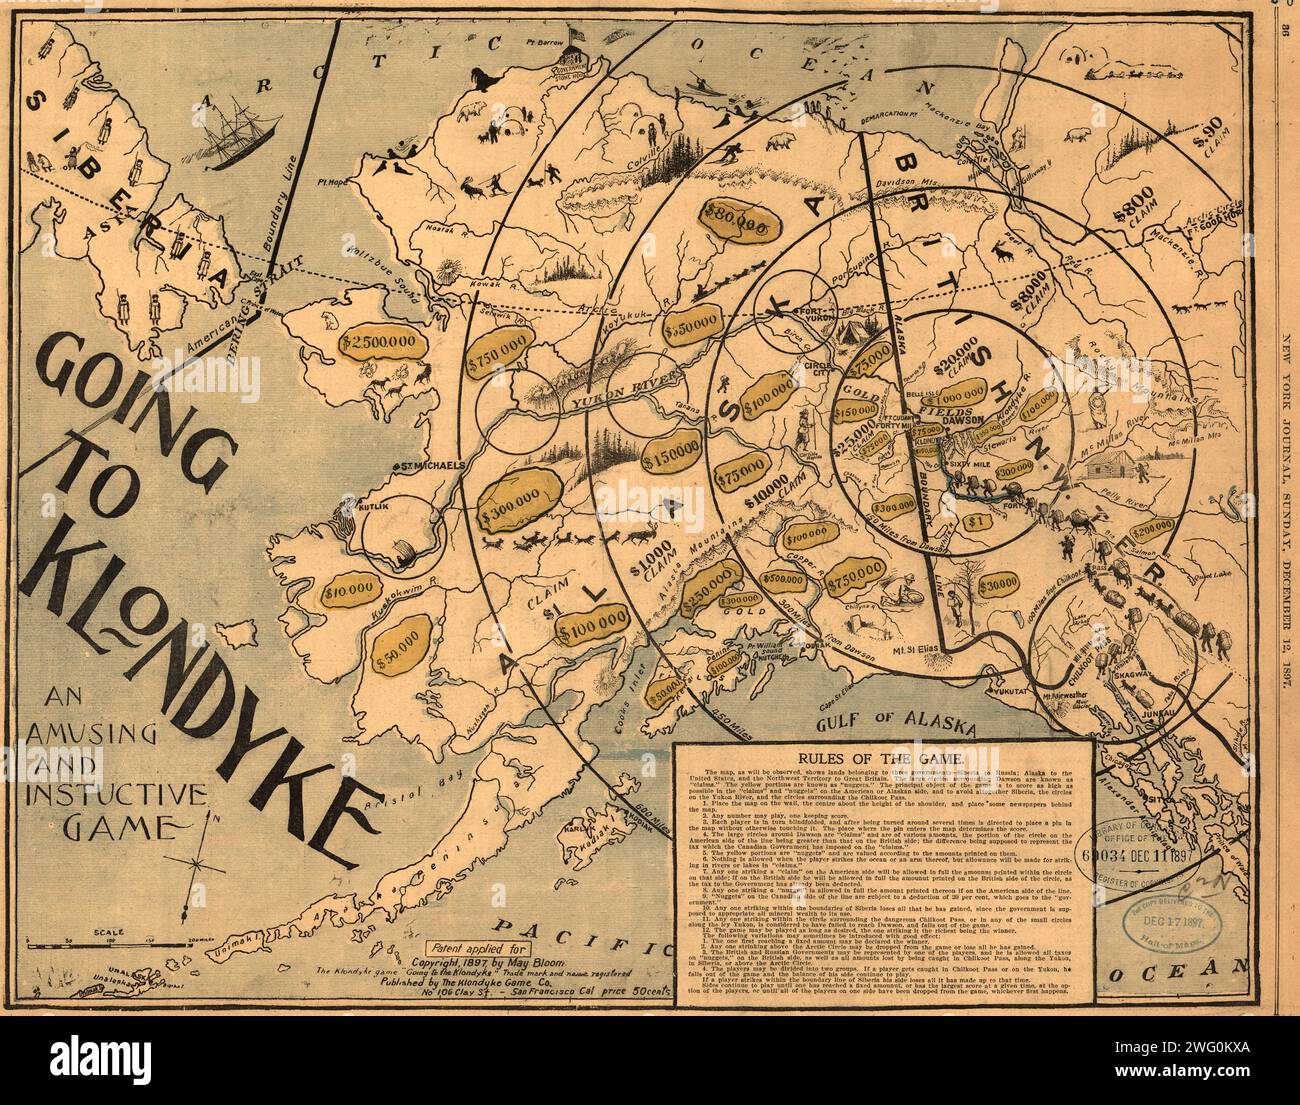 Ich fahre nach Klondyke, 1897. Der Klondike Gold Rush von 1898 war eine der größten Goldfrenzies der Geschichte. Zehntausende von Goldsucher aus der ganzen Welt strömten nach Norden nach Alaska und den Yukon, auf einer fiebrigen Suche nach Vermögen. Dieses Spiel, Going to Klondyke, wurde 1897 auf der Grundlage von Nachrichten über die großen ersten Goldschläge im Yukon und in Erwartung des bevorstehenden Ansturms erstellt. Das Spiel wurde am 12. Dezember 1897 im New York Journal veröffentlicht. Es wurde von der Klondyke Game Company in San Francisco produziert, möglicherweise zum Verkauf an die vielen Goldsucher, die es weitergeben würden Stockfoto